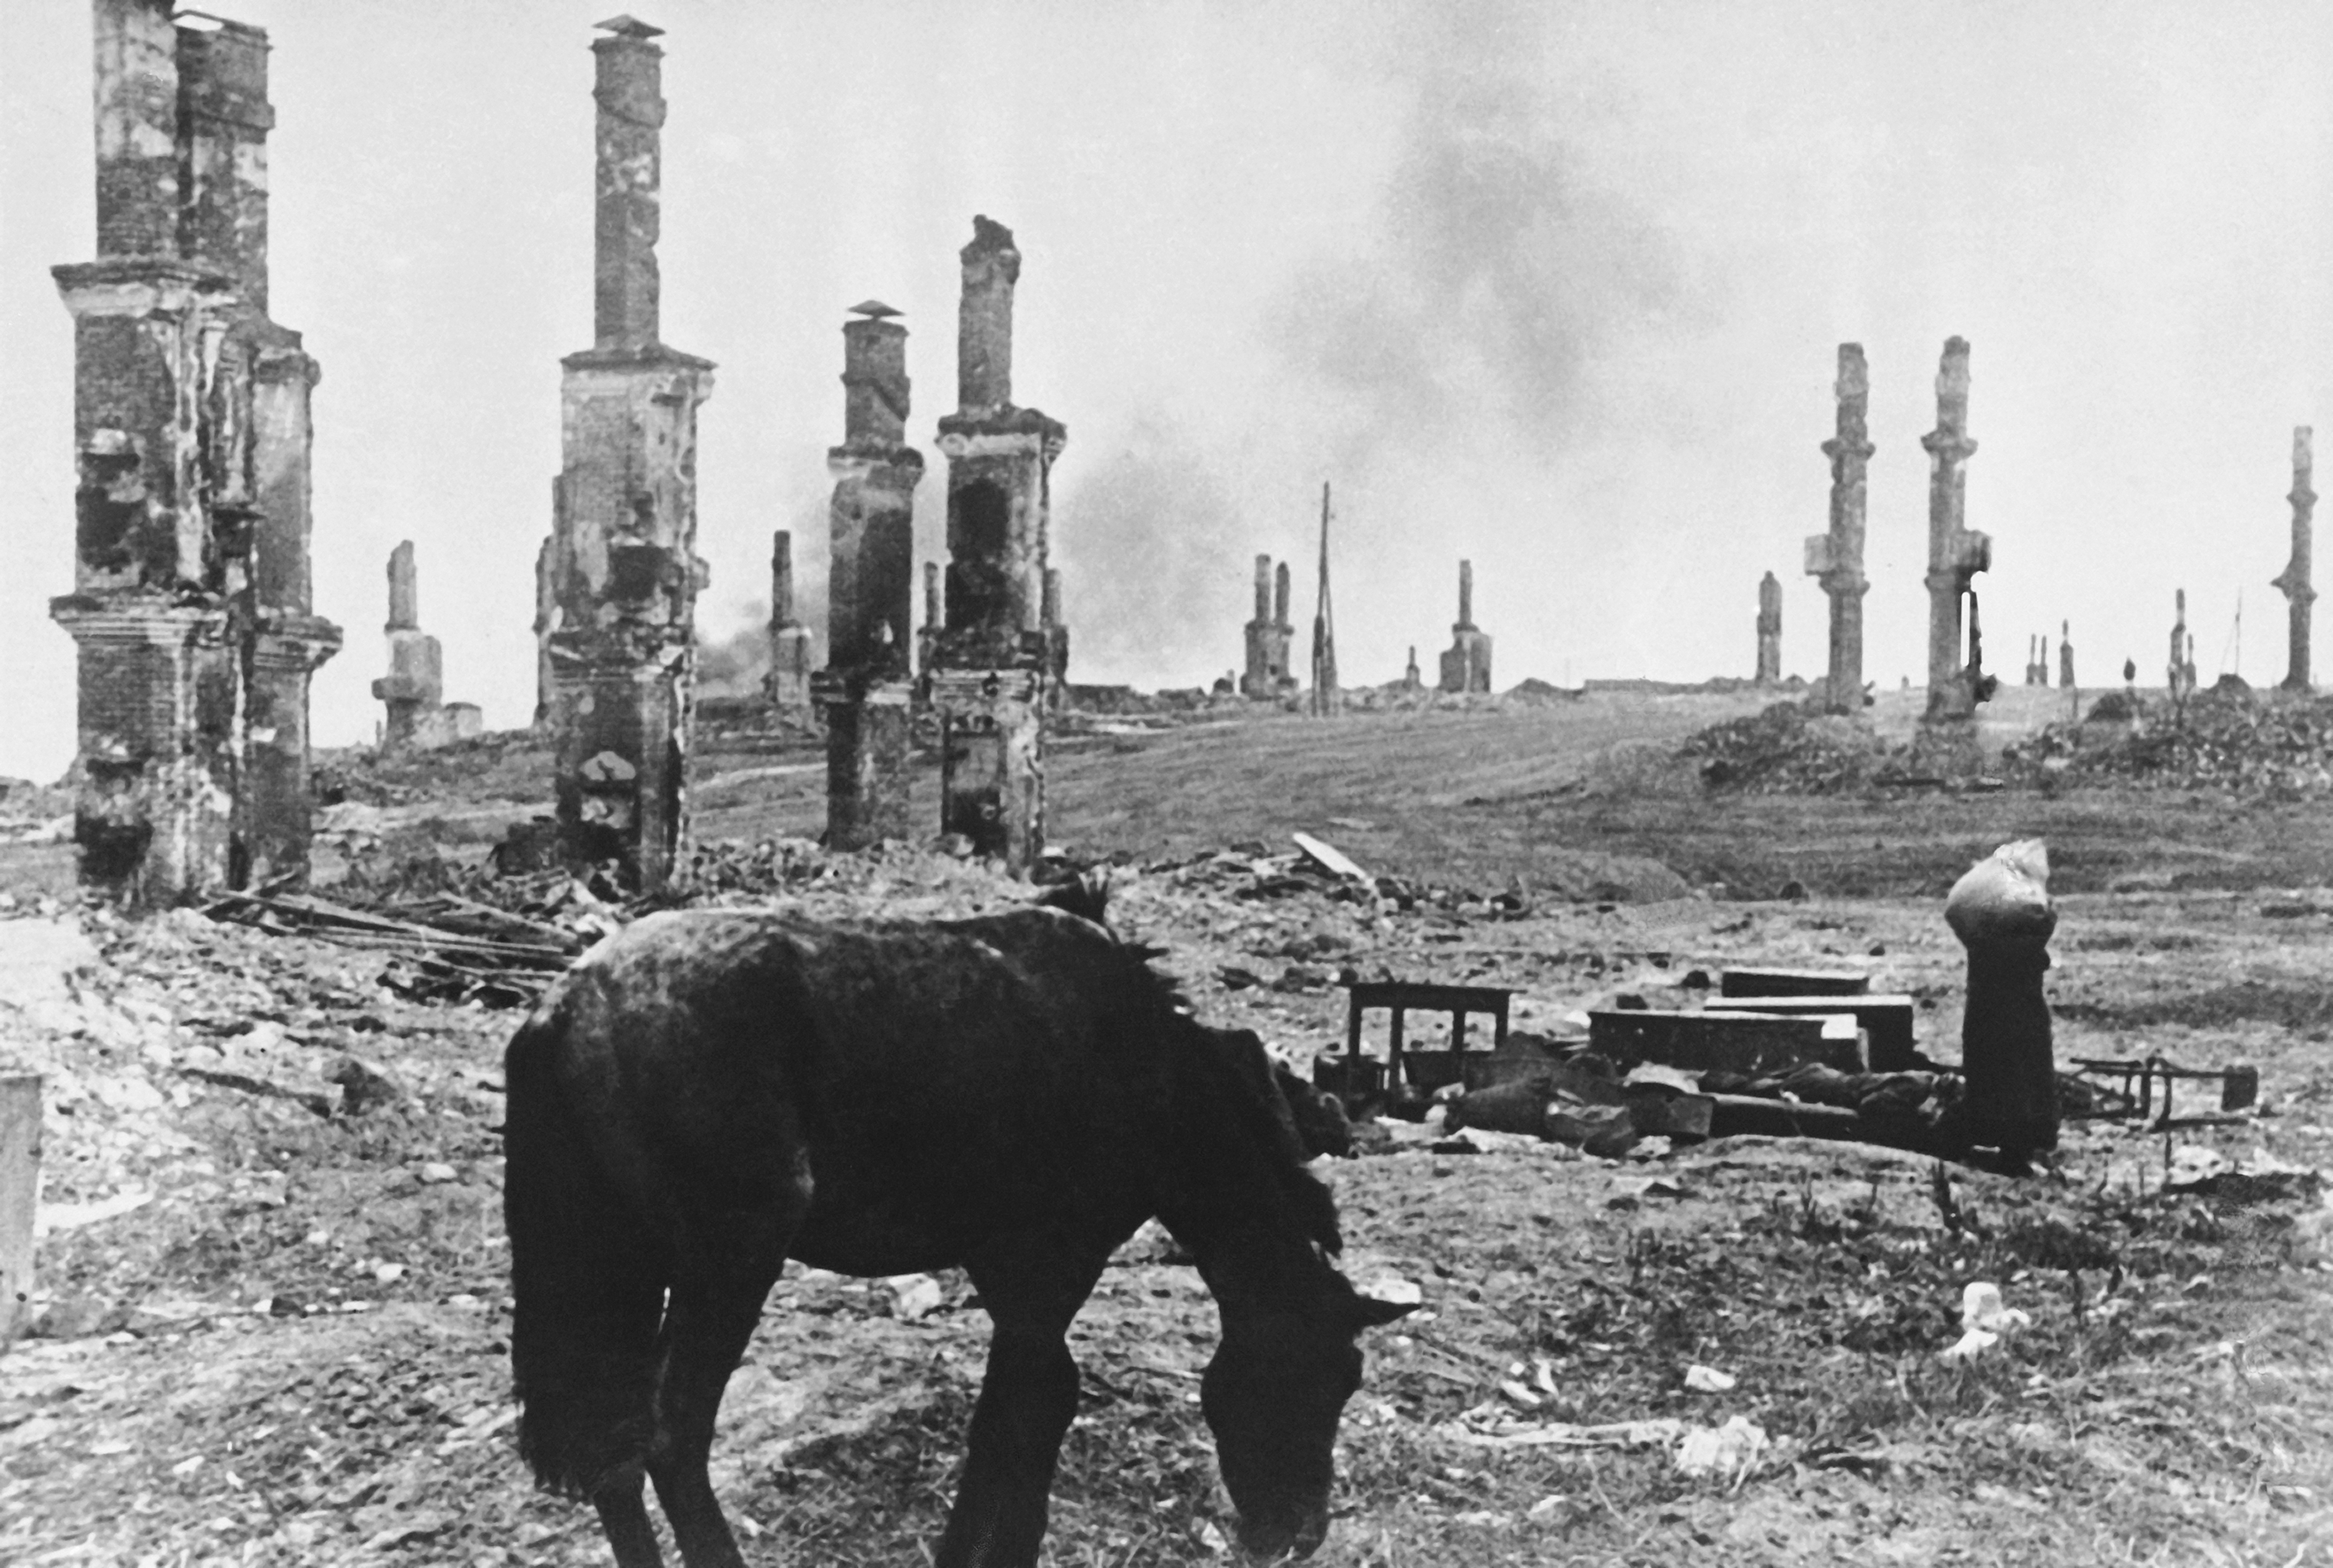 ARCHIVO - Un caballo abandonado pasta entre las ruinas de la ciudad rusa de Stalingrado, ahora Volgogrado, el 18 de diciembre de 1942, unos cuatro meses después de la batalla por la ciudad en el río Volga entre las fuerzas del Eje y el ejército soviético. En el fondo, a la derecha, las mujeres rusas que salen de sus maltratadas casas se abren camino entre las ruinas. 

